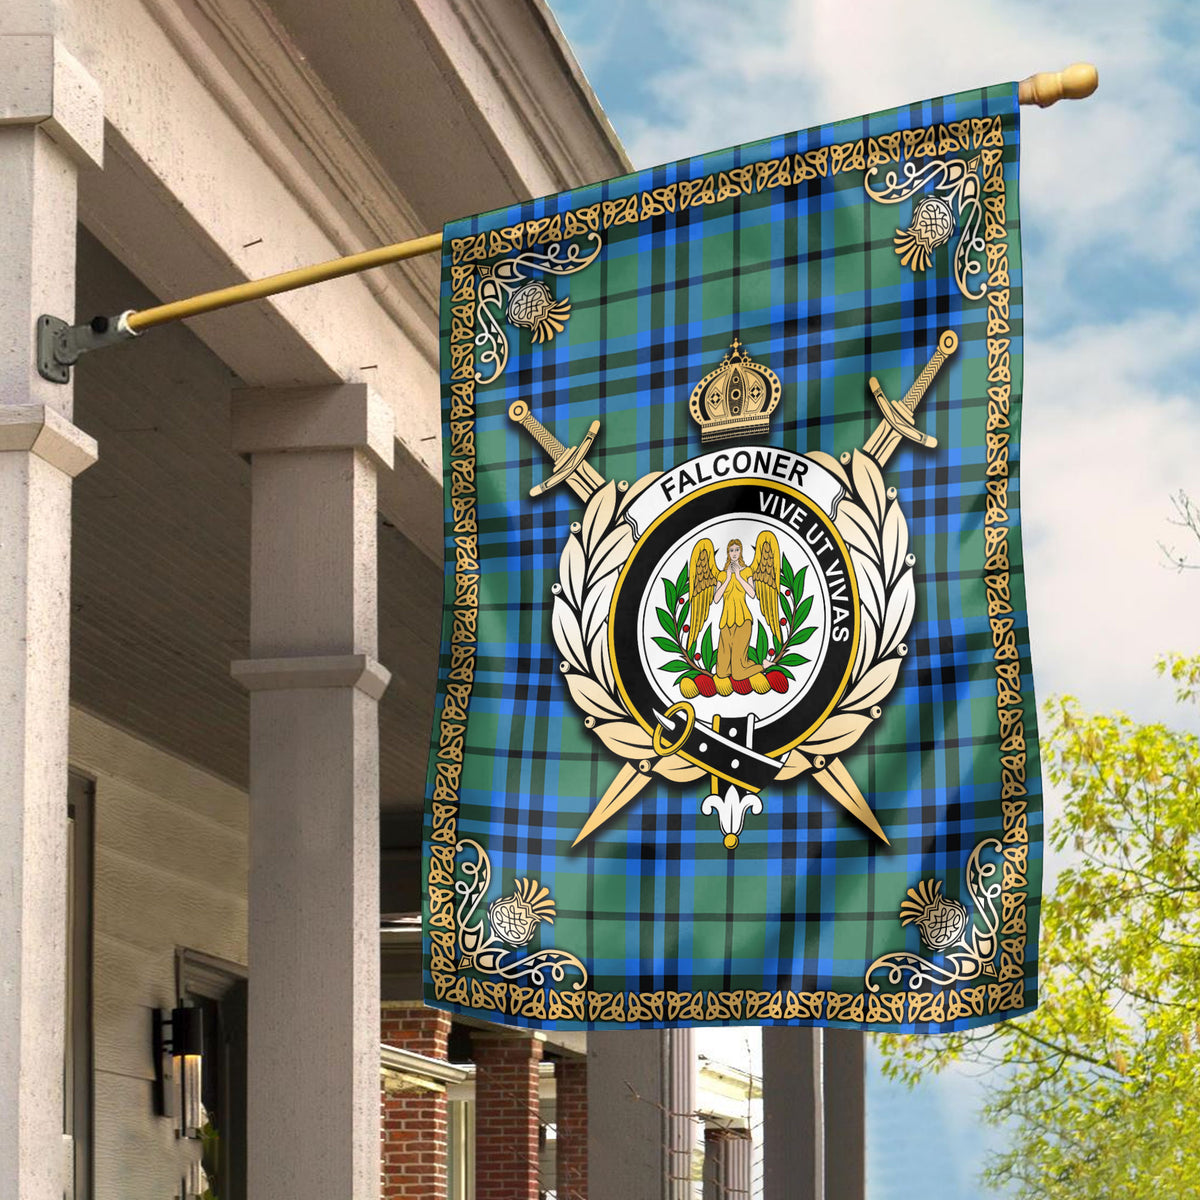 Falconer Tartan Crest Garden Flag - Celtic Thistle Style